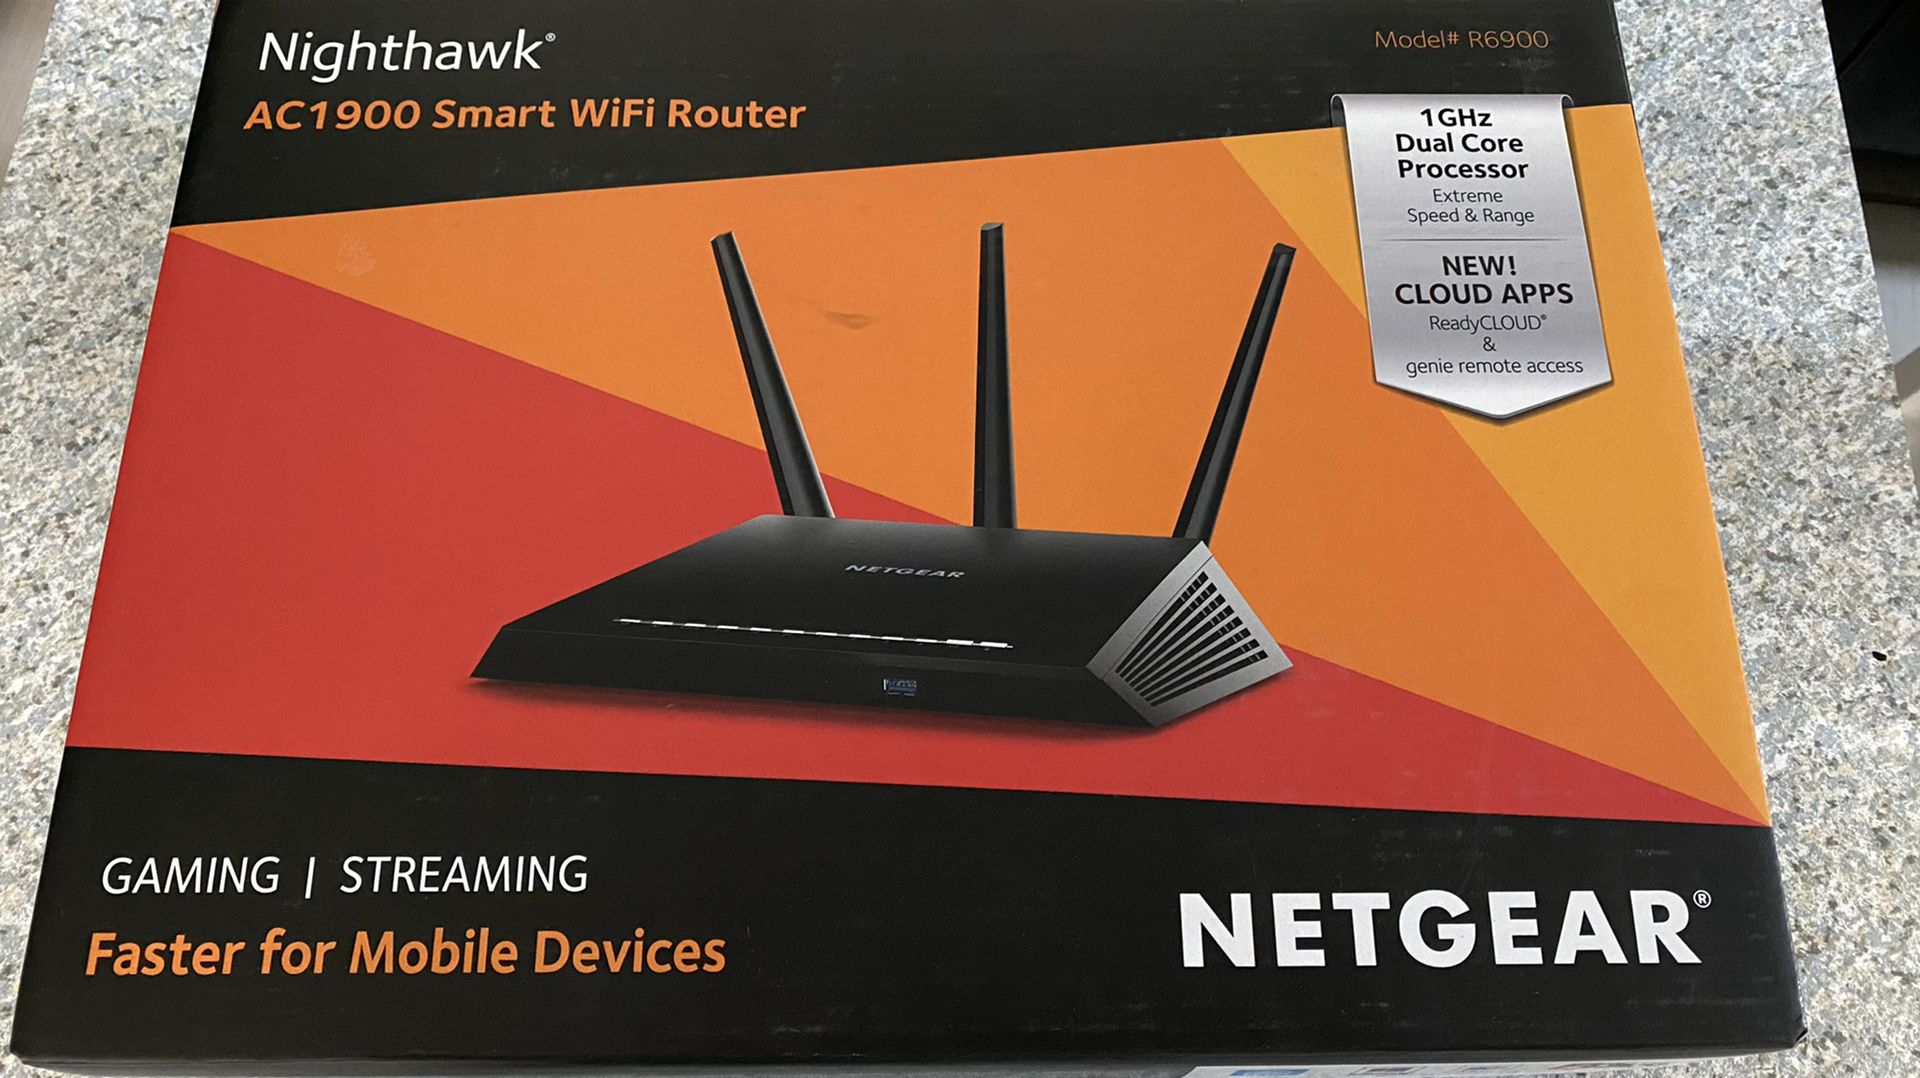 Netgear nighthawk AC1900 smart wifi router